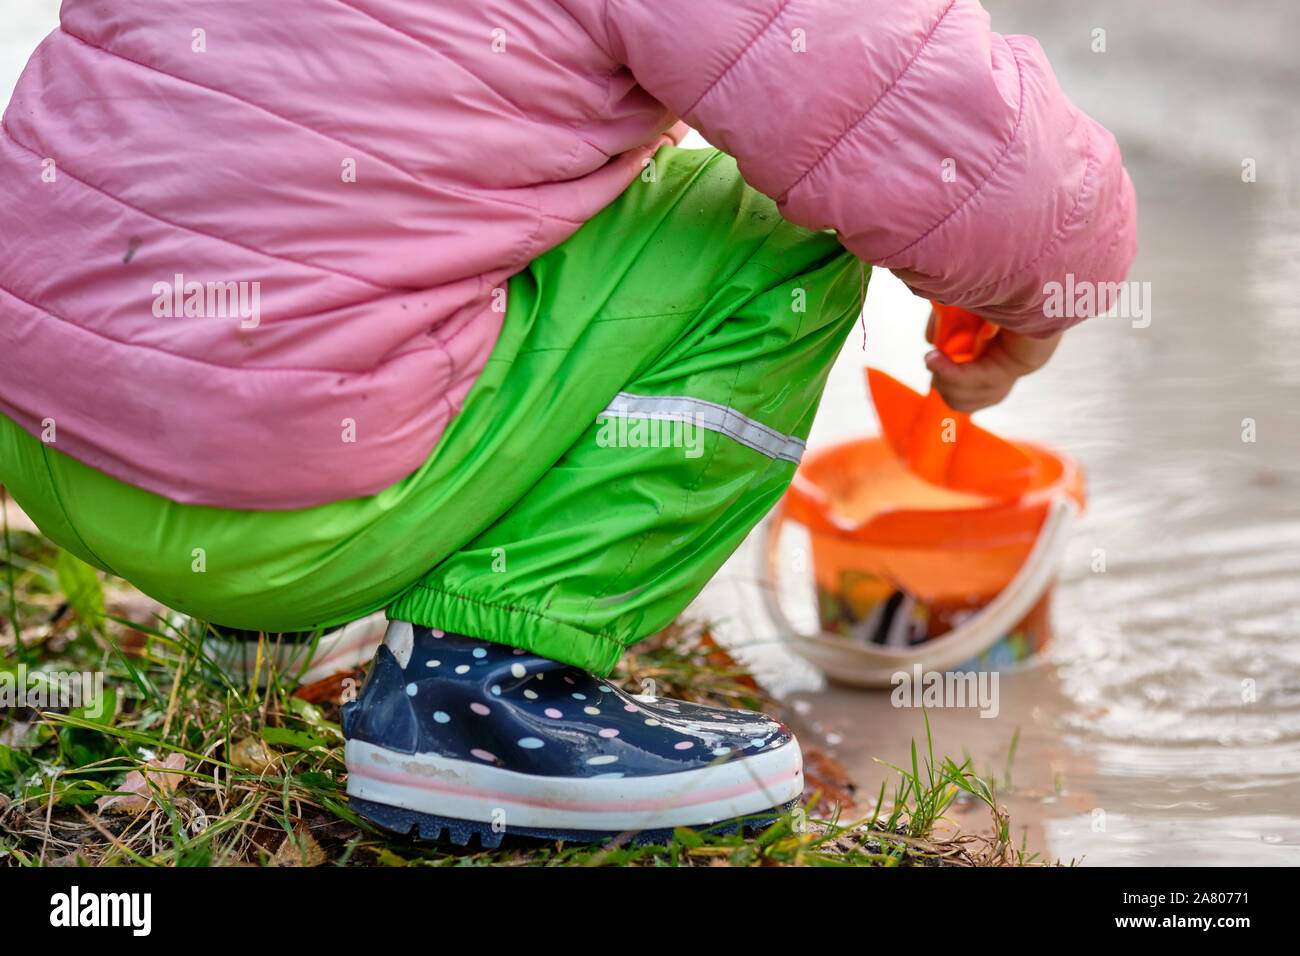 Niedrige Abschnitt eines Kindes mit Gummistiefeln und wasserdichte Hosen spielen in einem tiefen schlammigen regen Pfütze mit einer Schaufel und Eimer. In Bayern in Germa gesehen Stockfoto